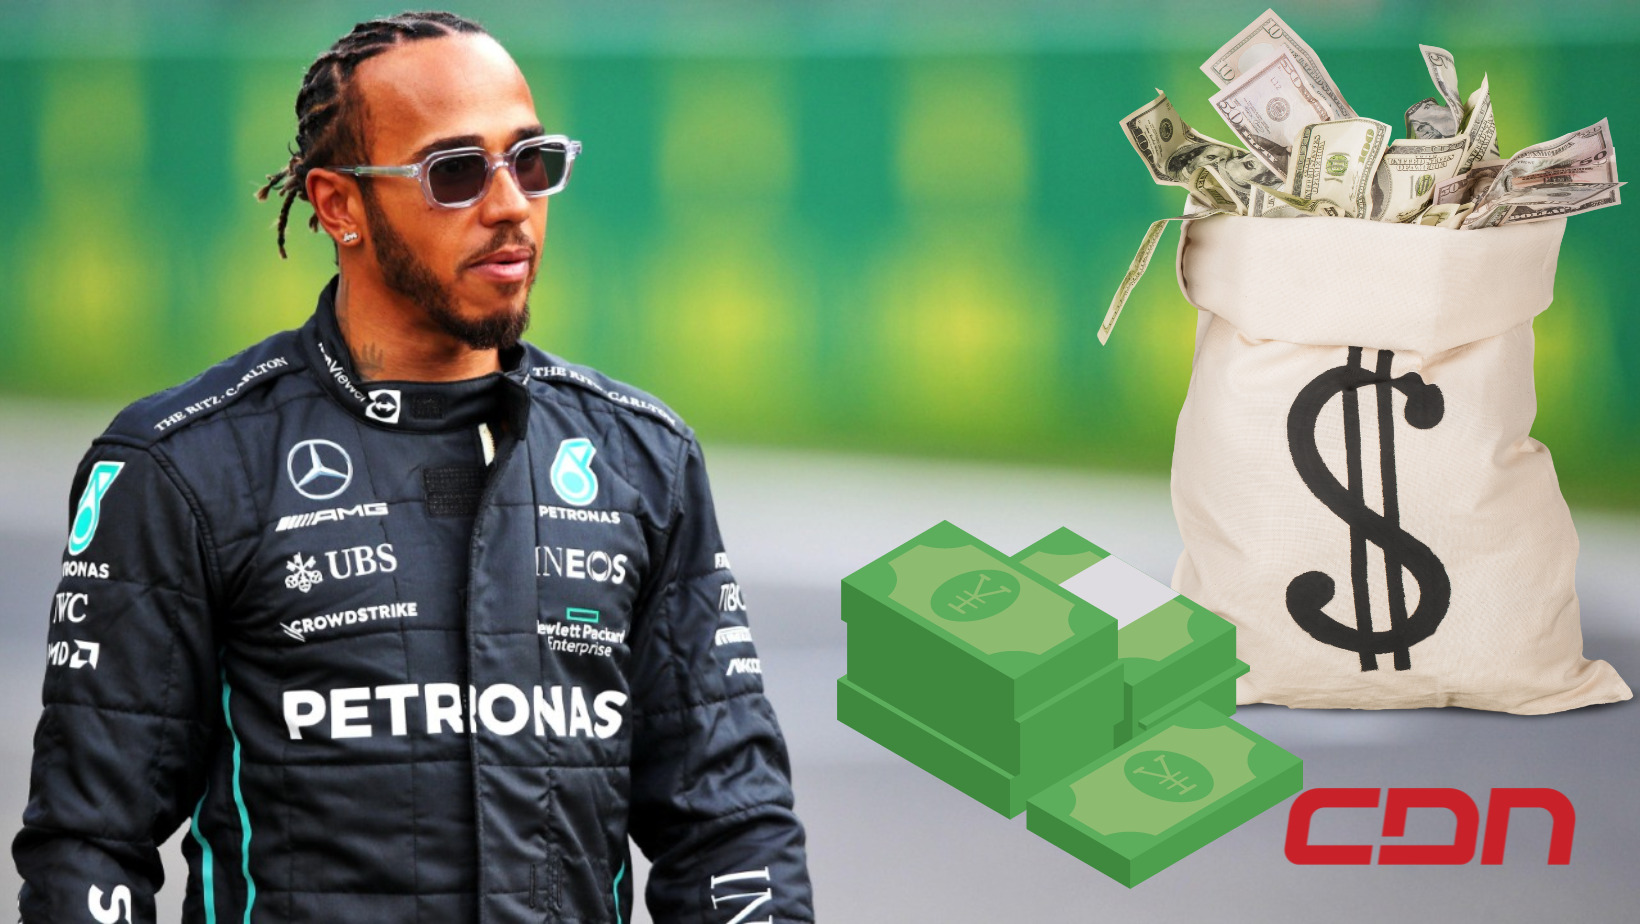 Lewis Hamilton, piloto de automovilismo británico. Foto: CDN Digital